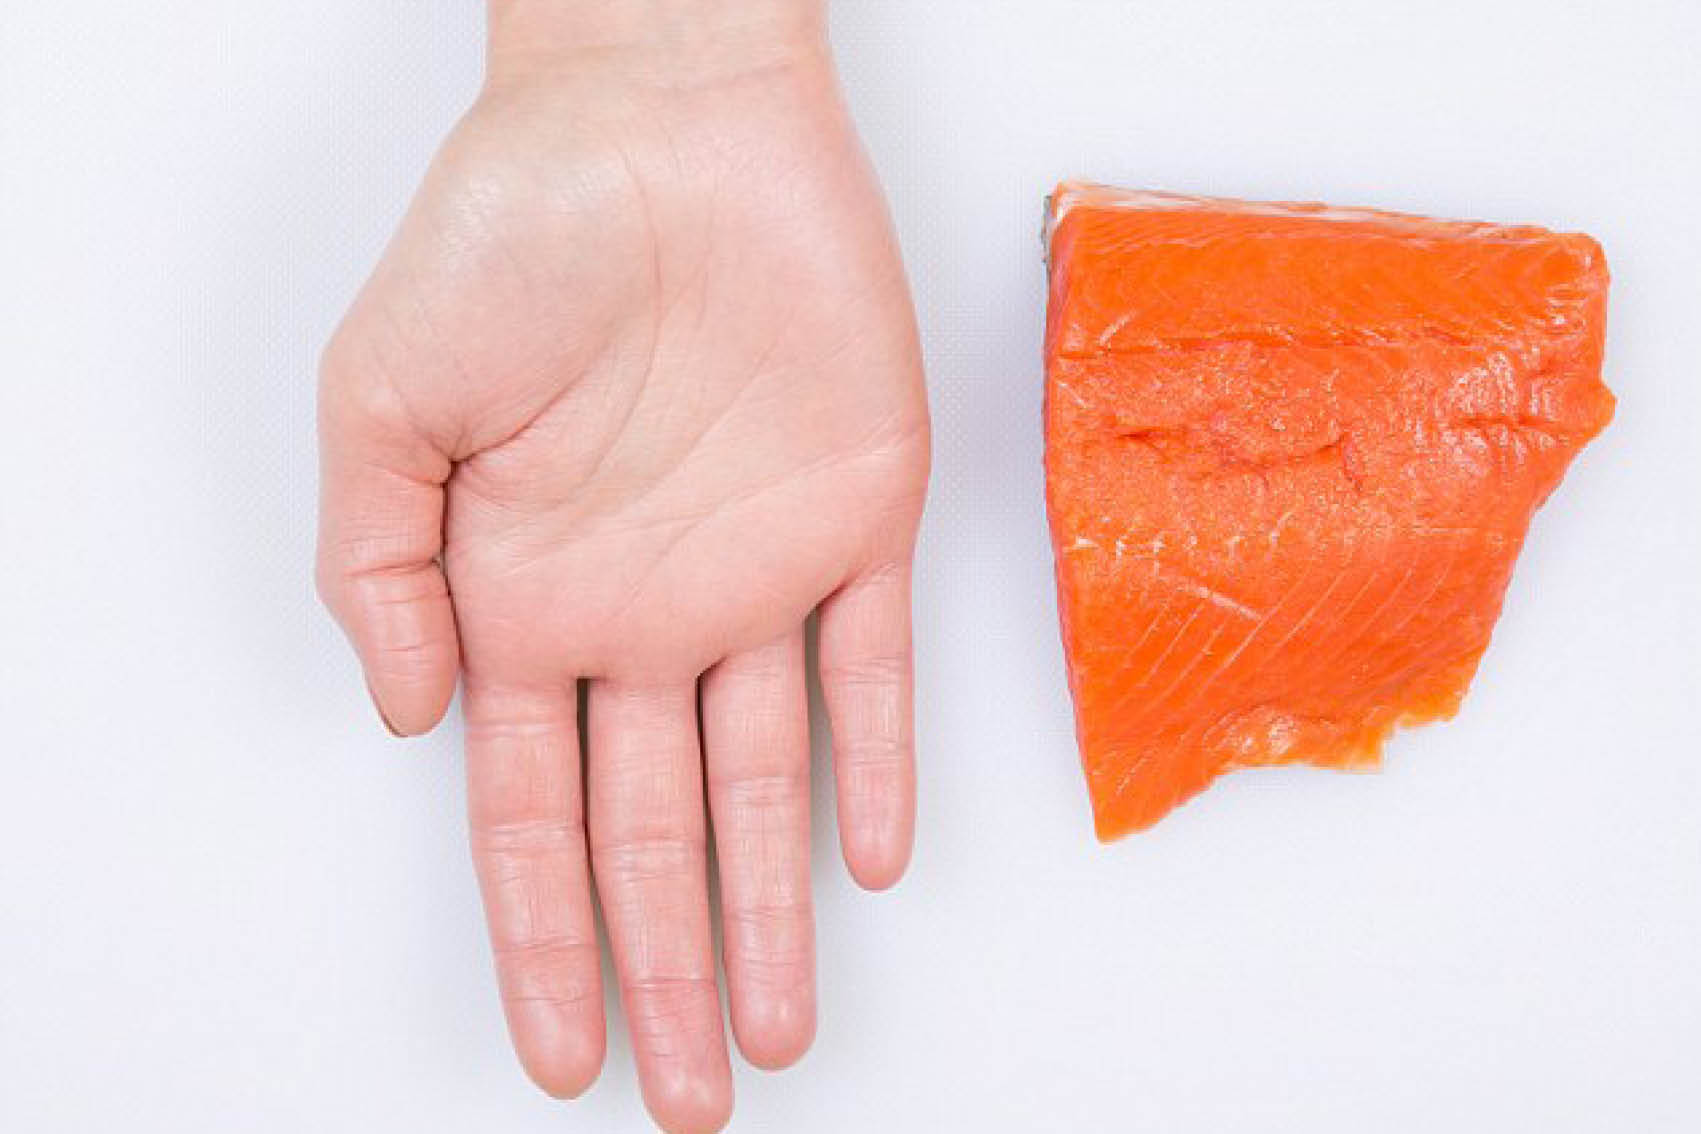 Nog meer gezonde vetten! Net zoals vlees zou een portie vette vis zoals zalm, makreel of sardientjes zo groot als je handpalm (zonder vingers) moeten zijn. Vette vis bevat enorm veel gezonde omega-3 vetten, maar let wel op, ook hier zitten gewoon calorieën in.